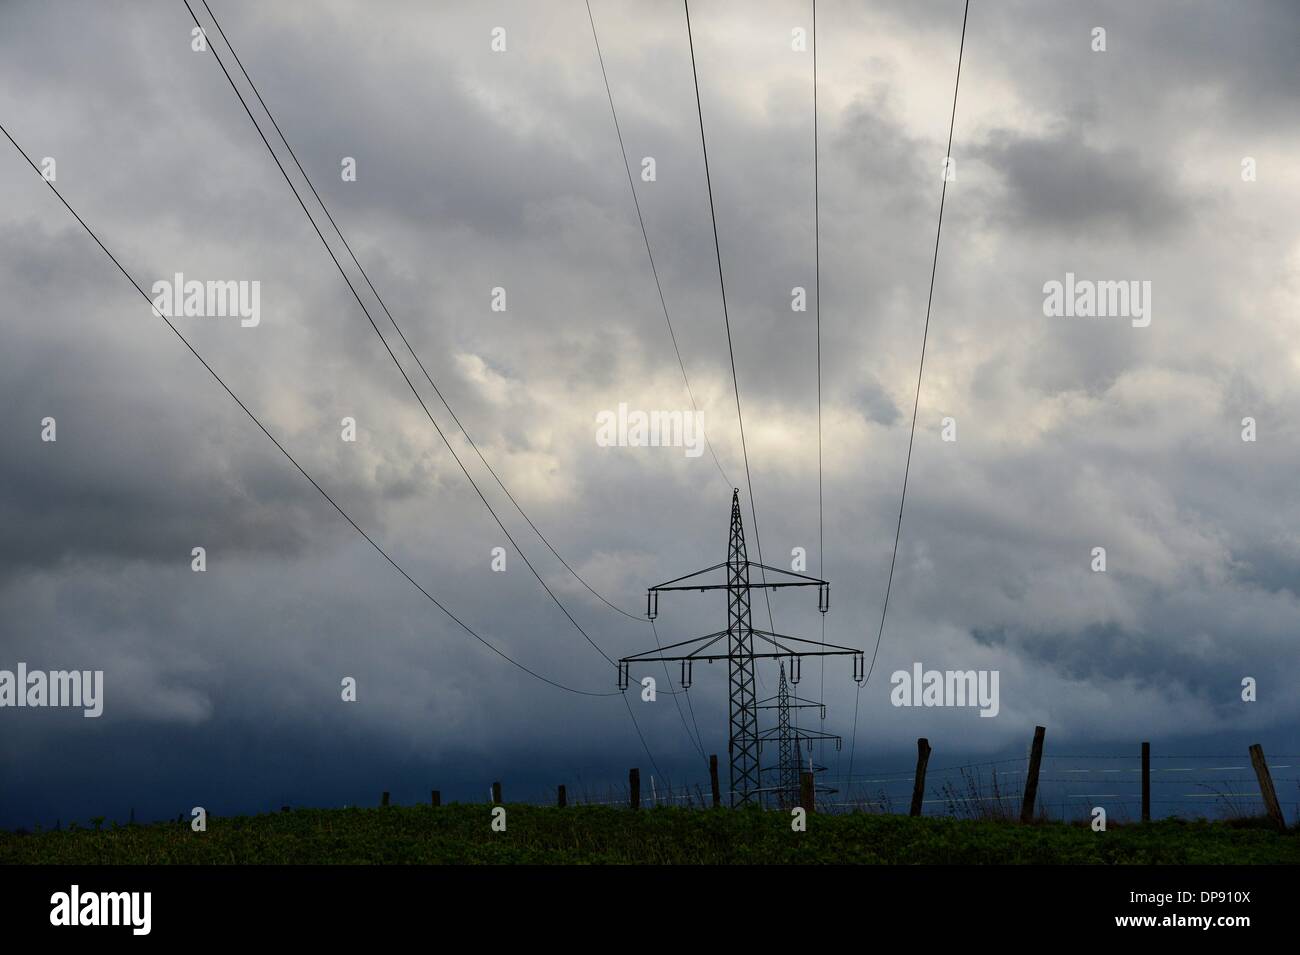 Torri elettrico con spettacolari nubi in Germania, 8.o gennaio 2014. Foto: Frank può Foto Stock